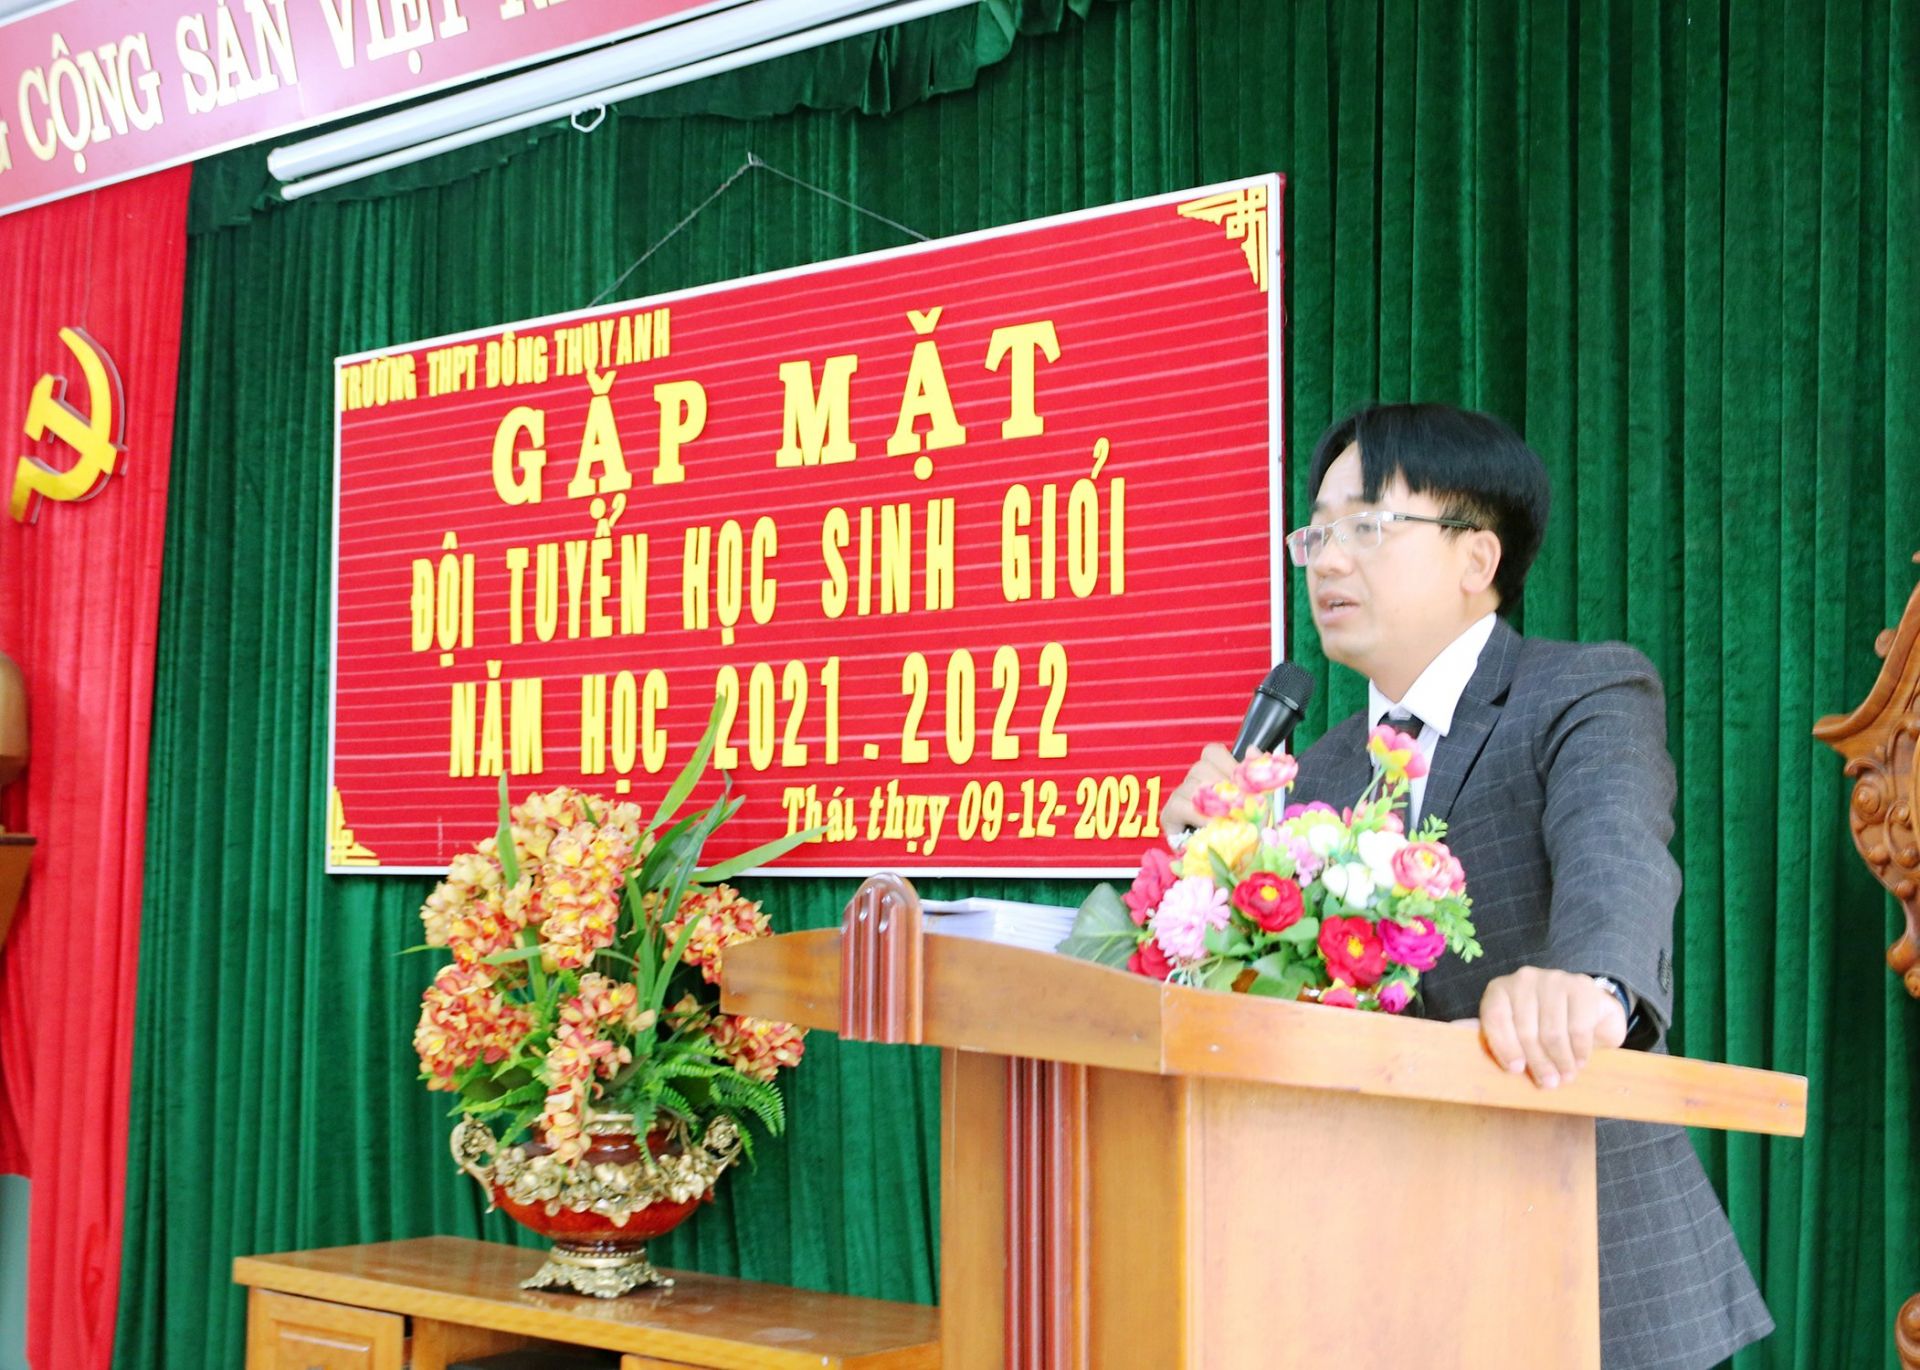 Thầy Trương Kim Hiển, Hiệu trưởng phát biểu tại Lễ gặp mặt đội tuyển học sinh giỏi năm học 2021 -2022 .